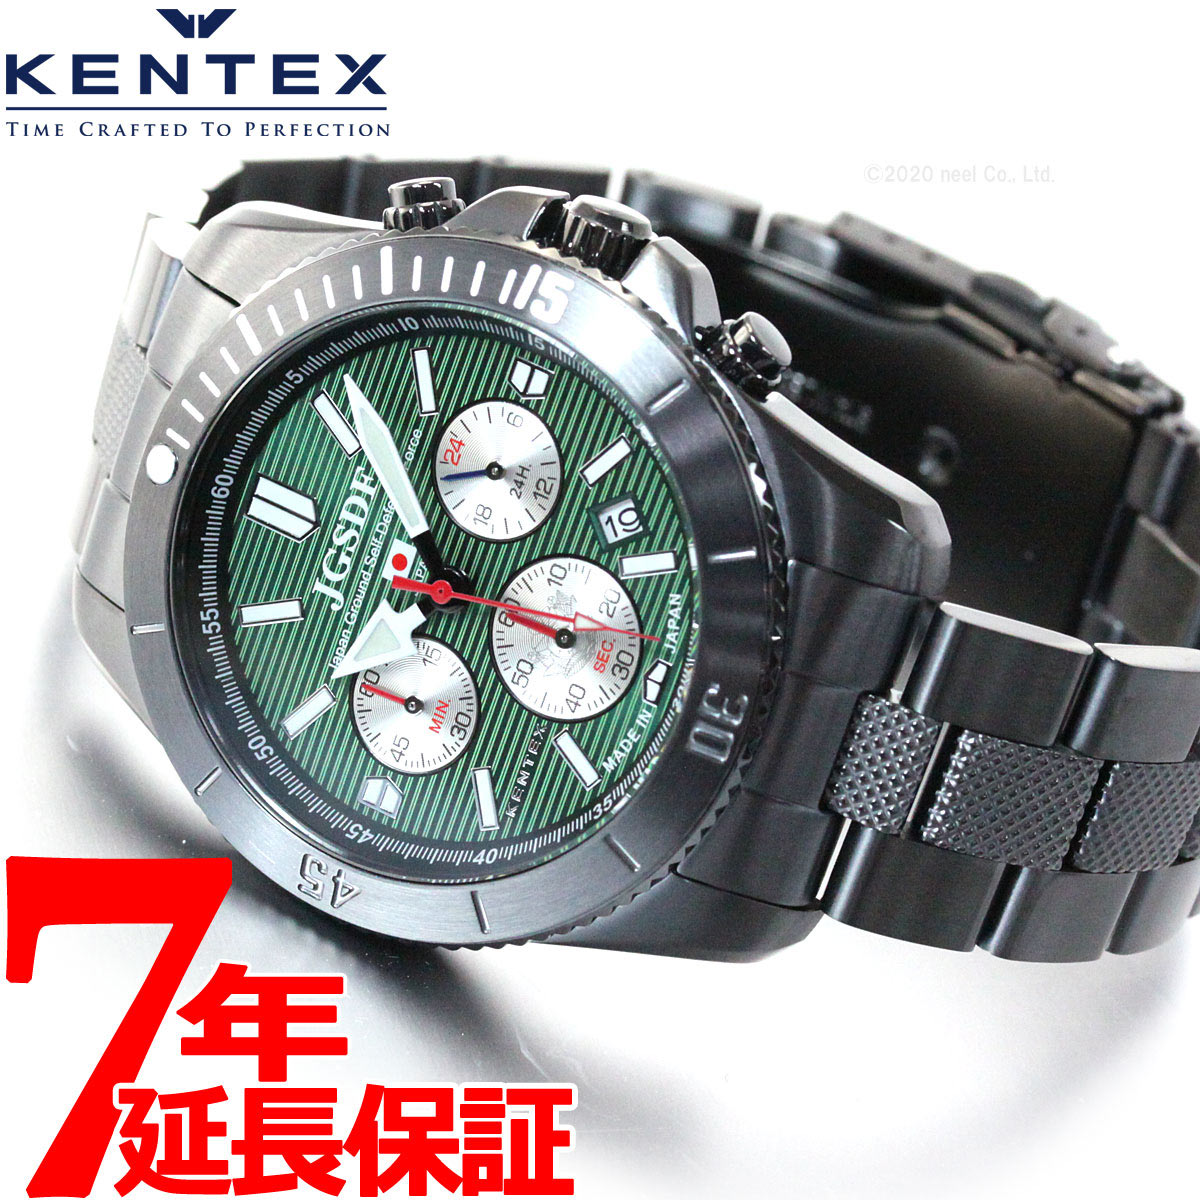 ケンテックス KENTEX 腕時計 メンズ JSDF PRO 陸上自衛隊 プロフェッショナルモデル クロノグラフ S690M-01